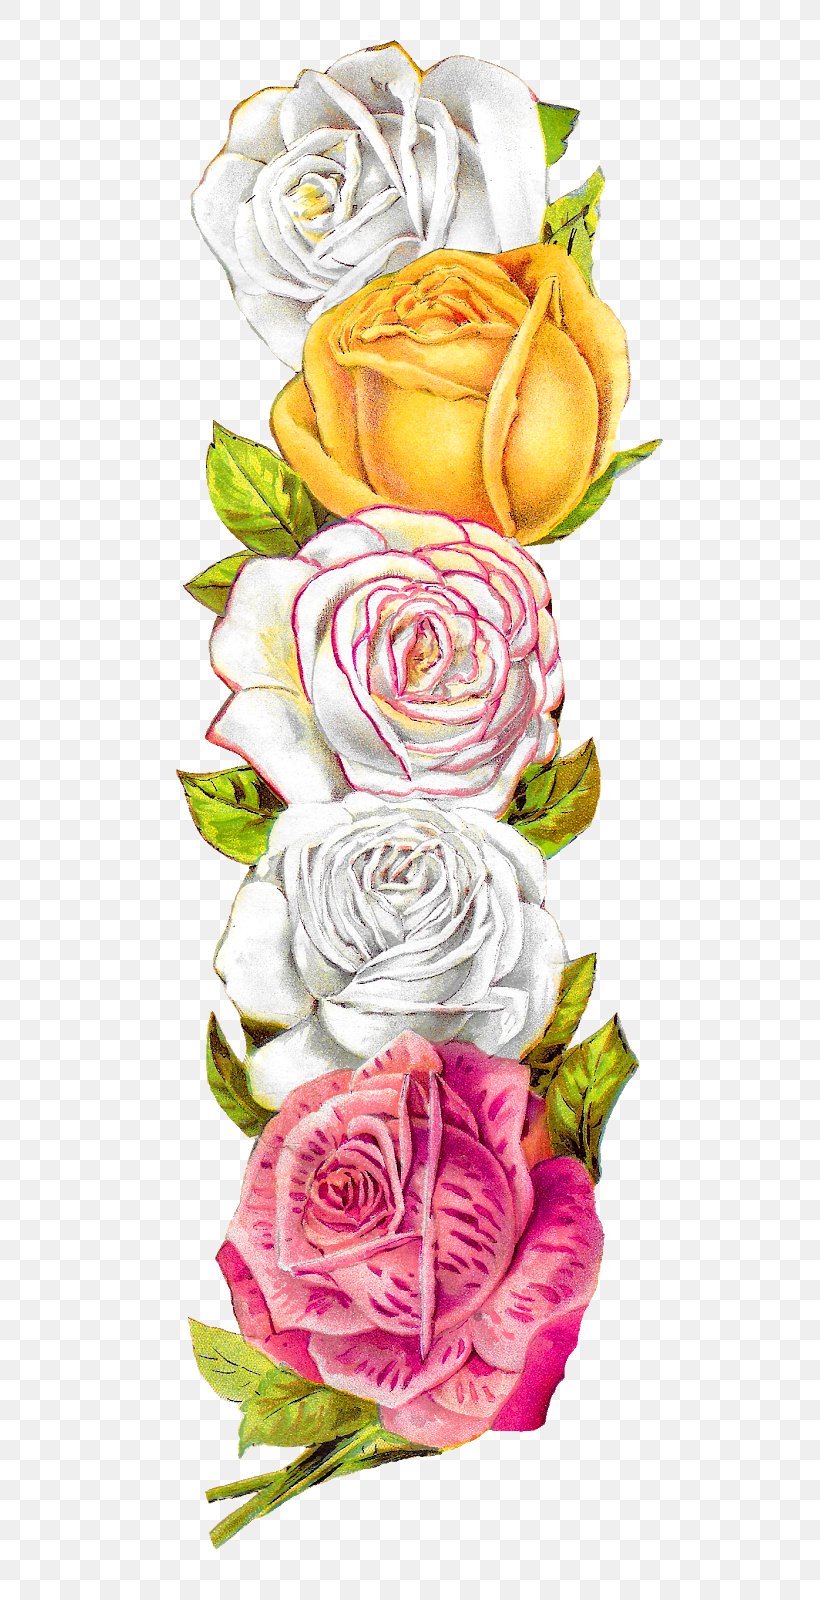 Garden Roses Cabbage Rose Floral Design Clip Art Image, PNG, 561x1600px, Garden Roses, Cabbage Rose, Cut Flowers, Floral Design, Floristry Download Free